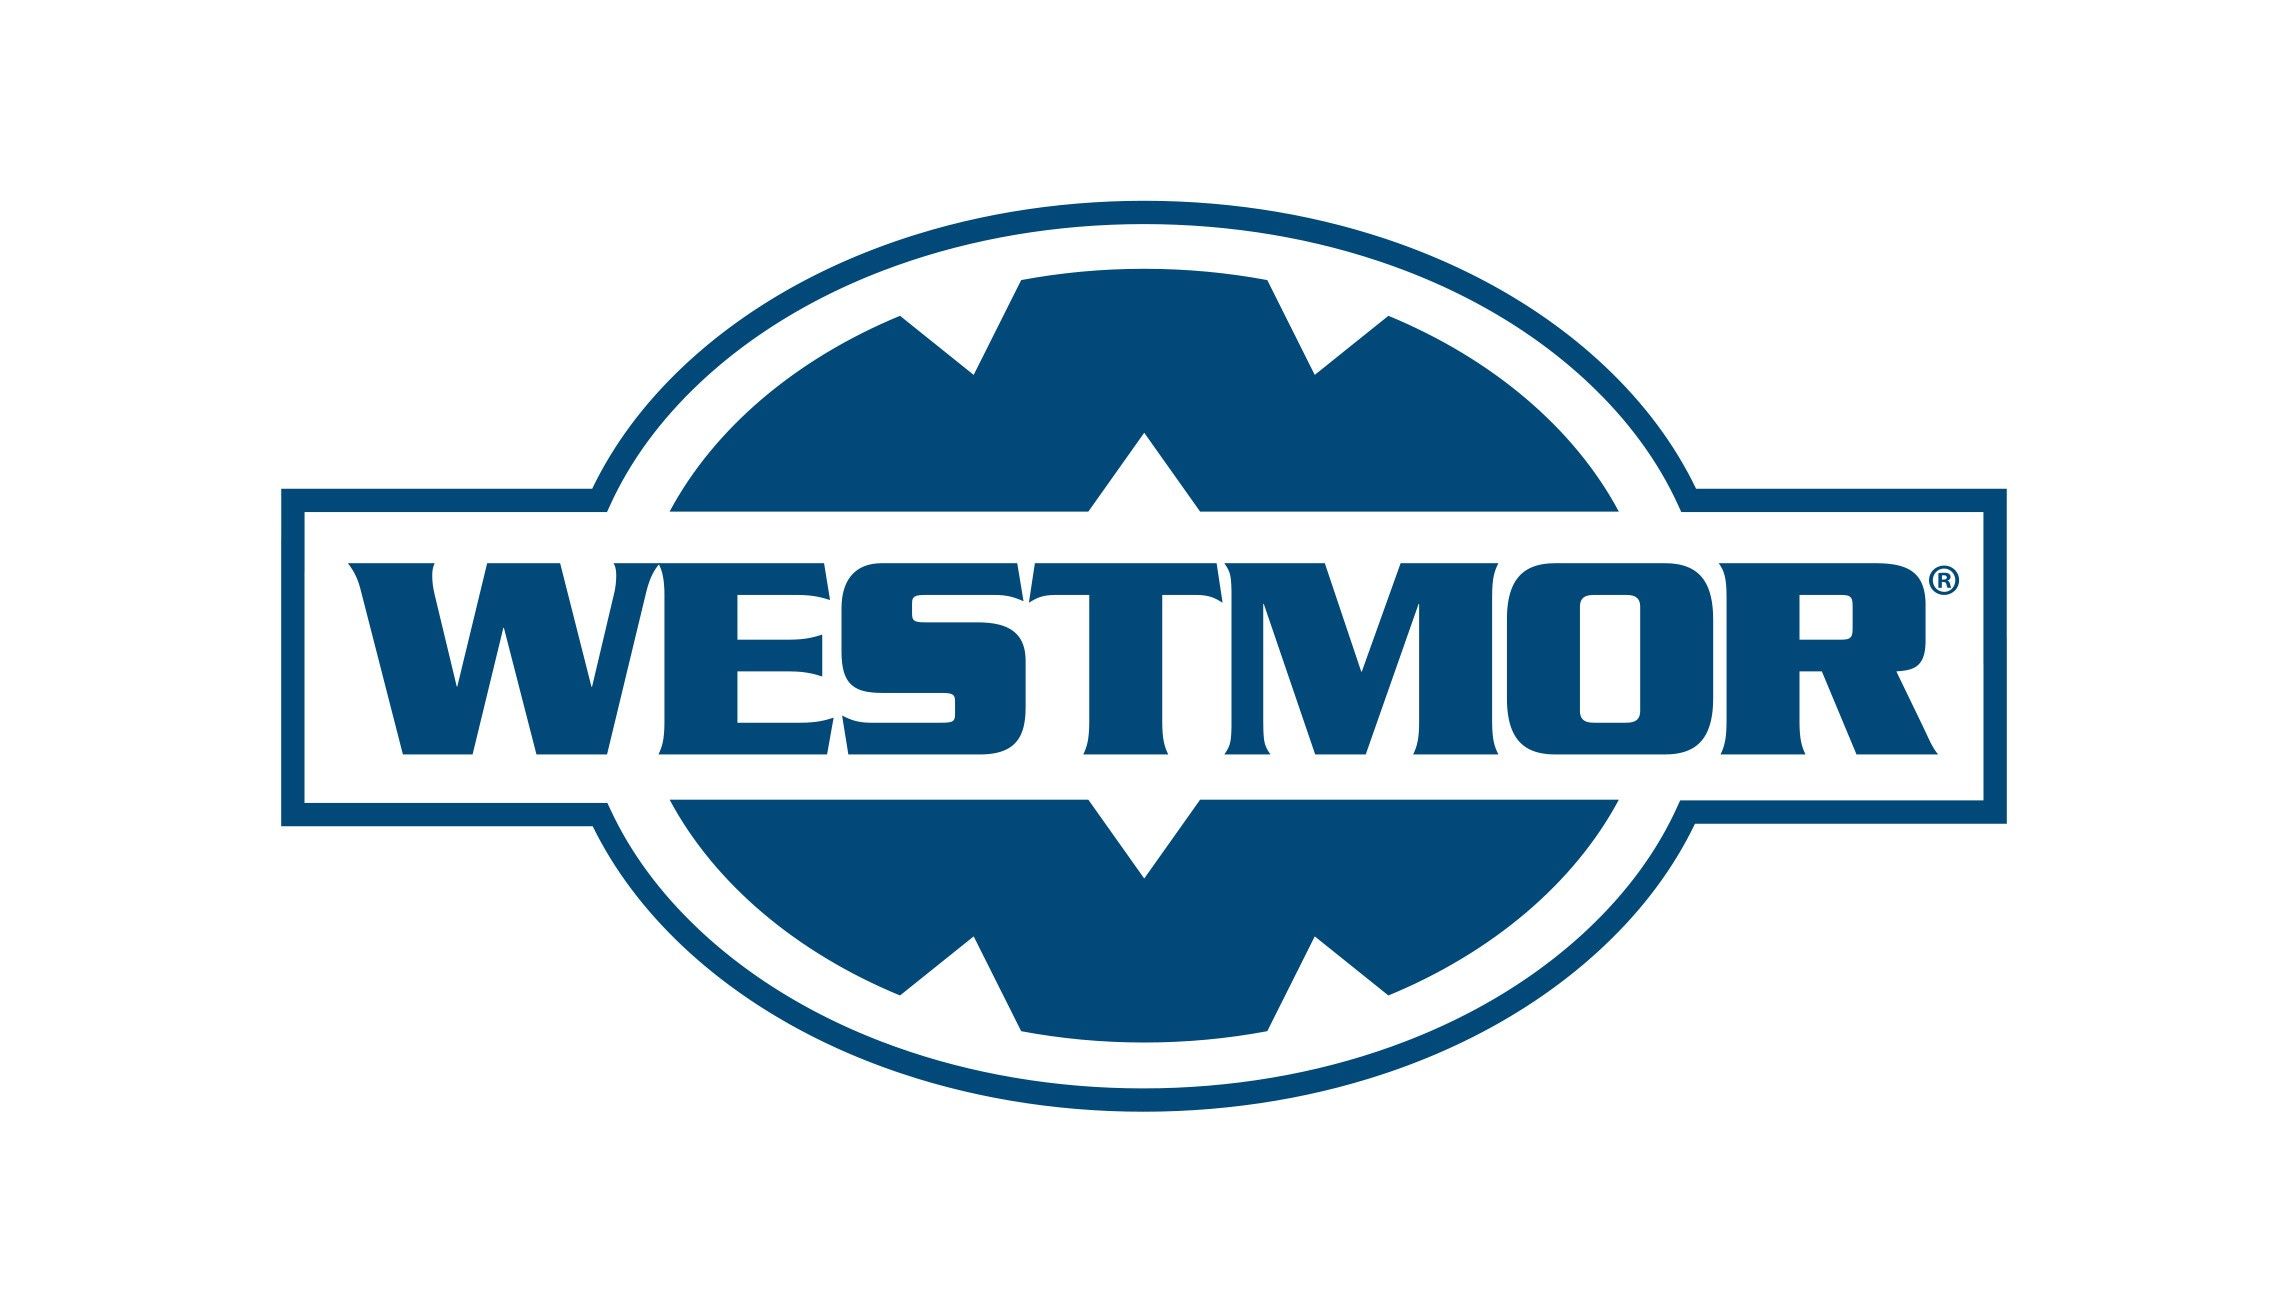 Westmor